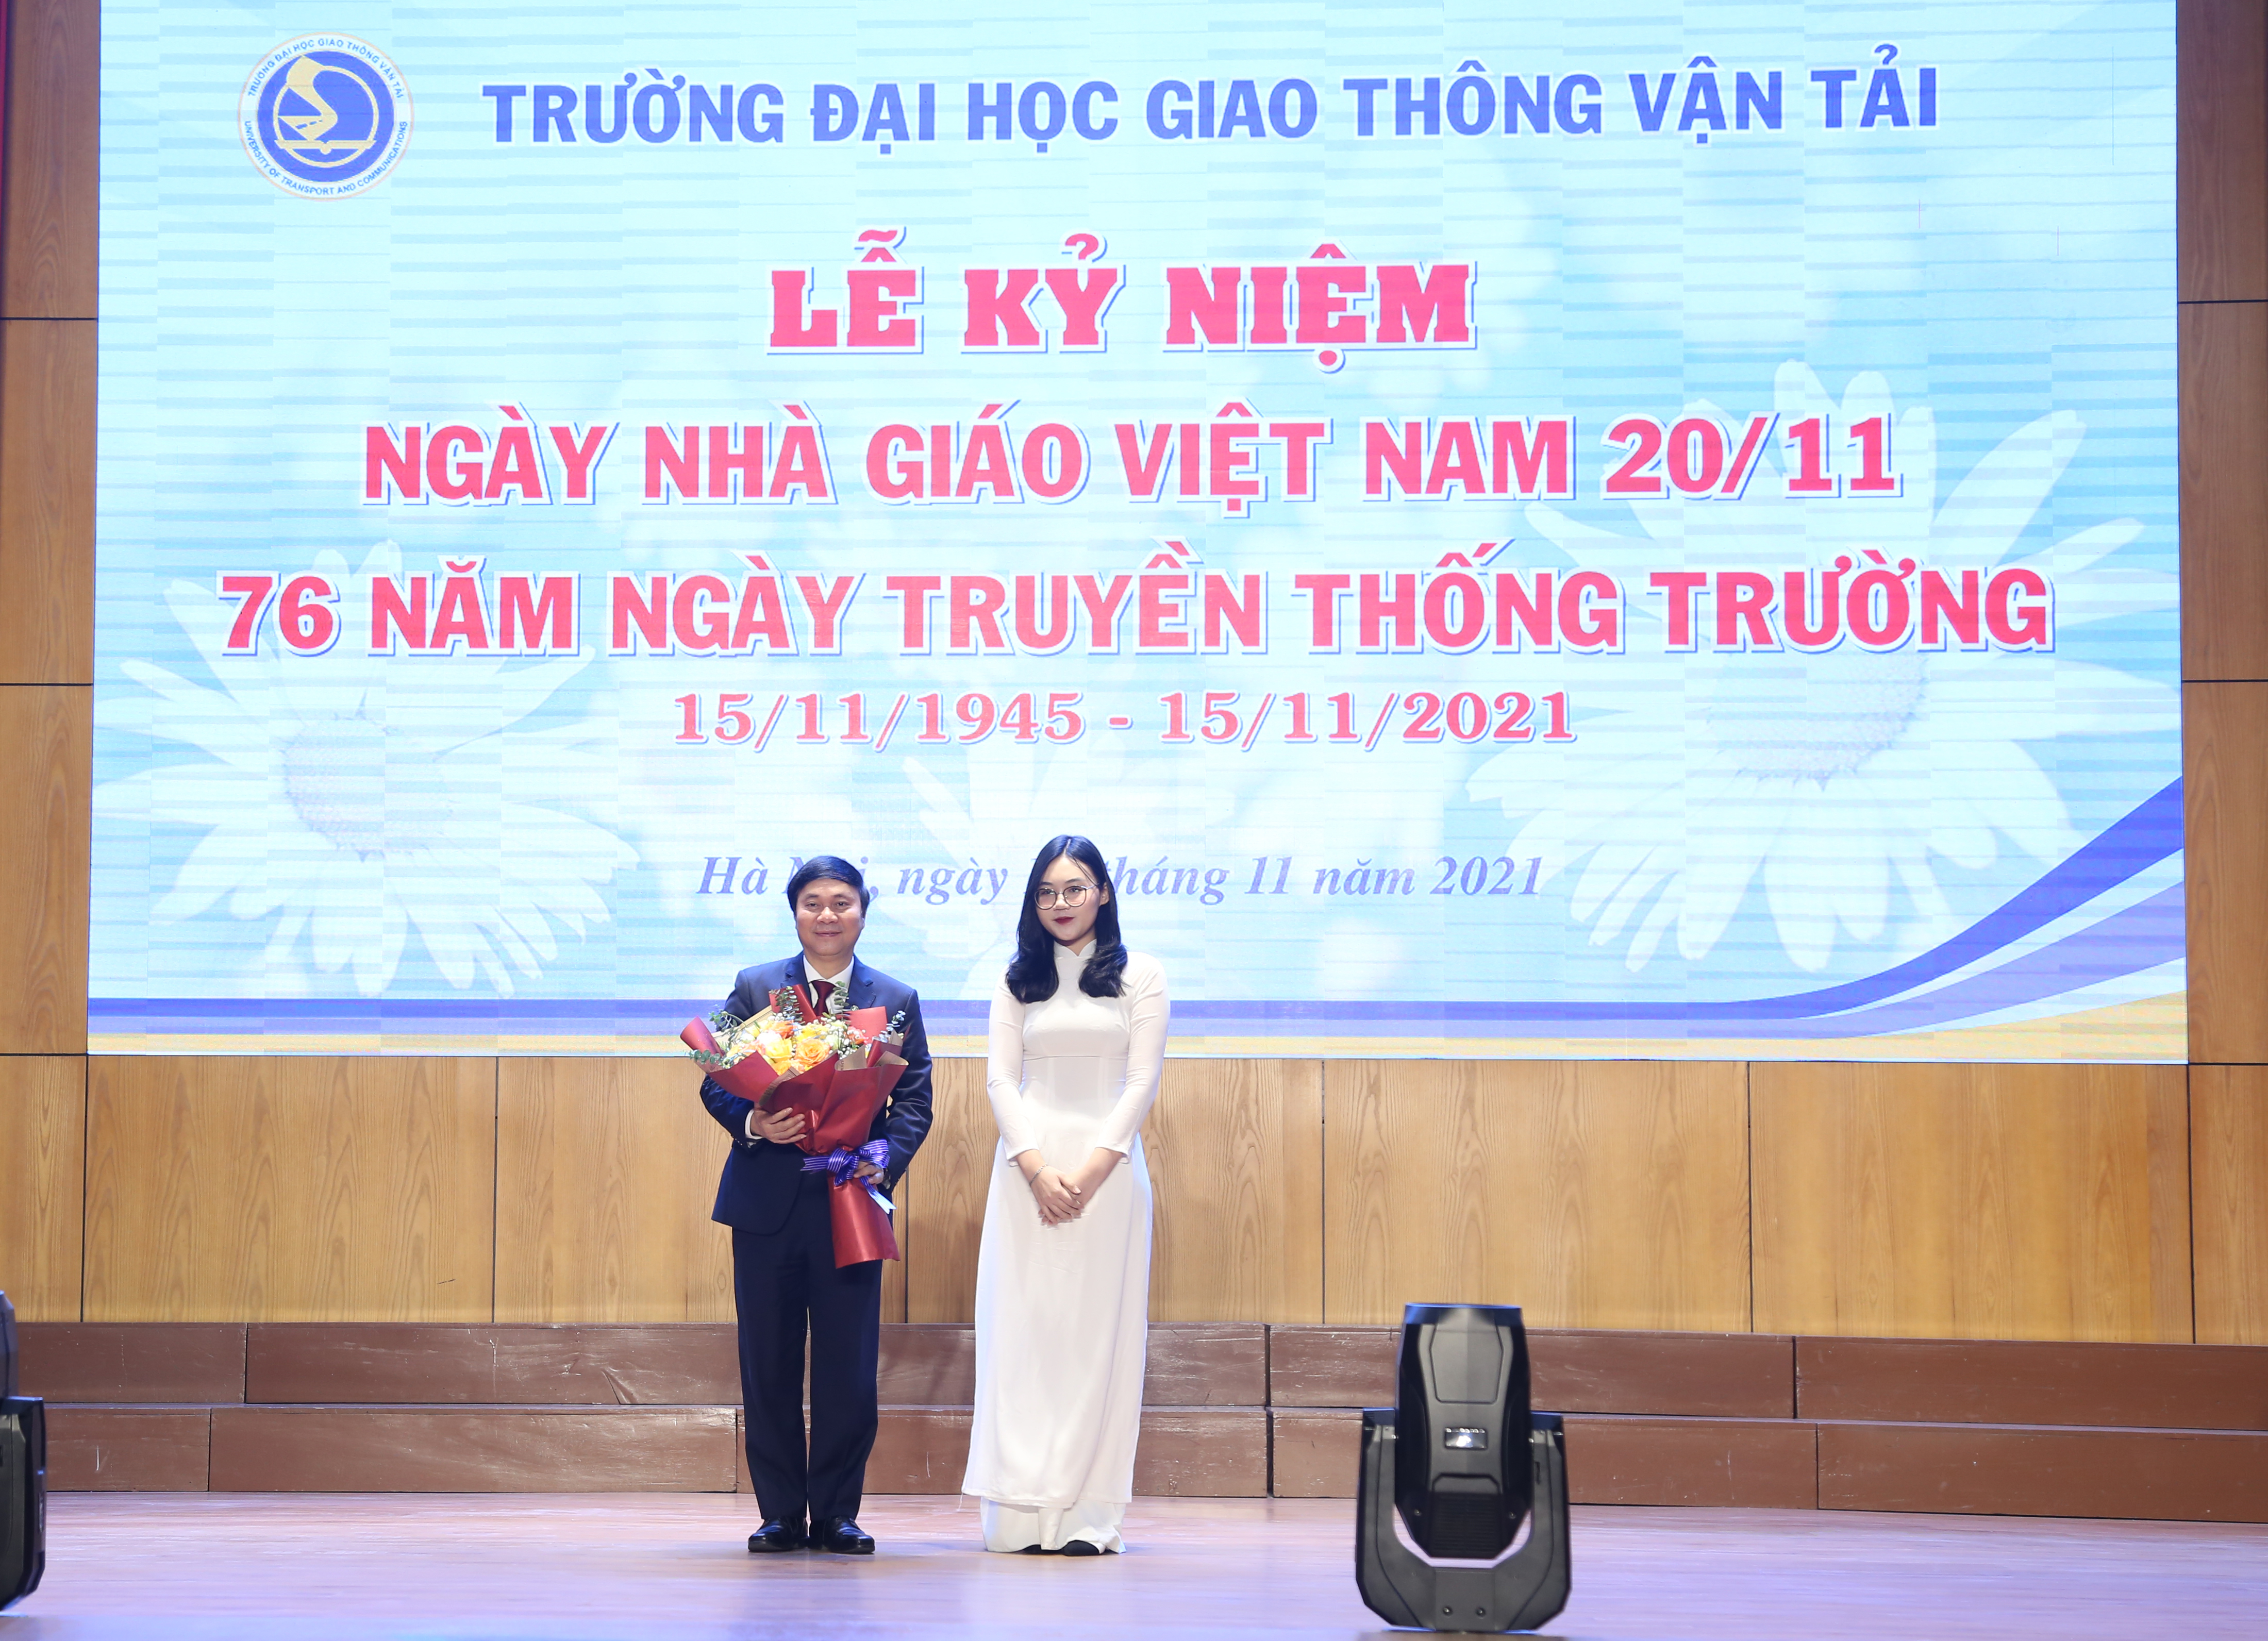 Lễ kỷ niệm 76 năm ngày Truyền thống Trường (15/11/1945-15/11/2021) và Ngày nhà giáo Việt Nam 20/11